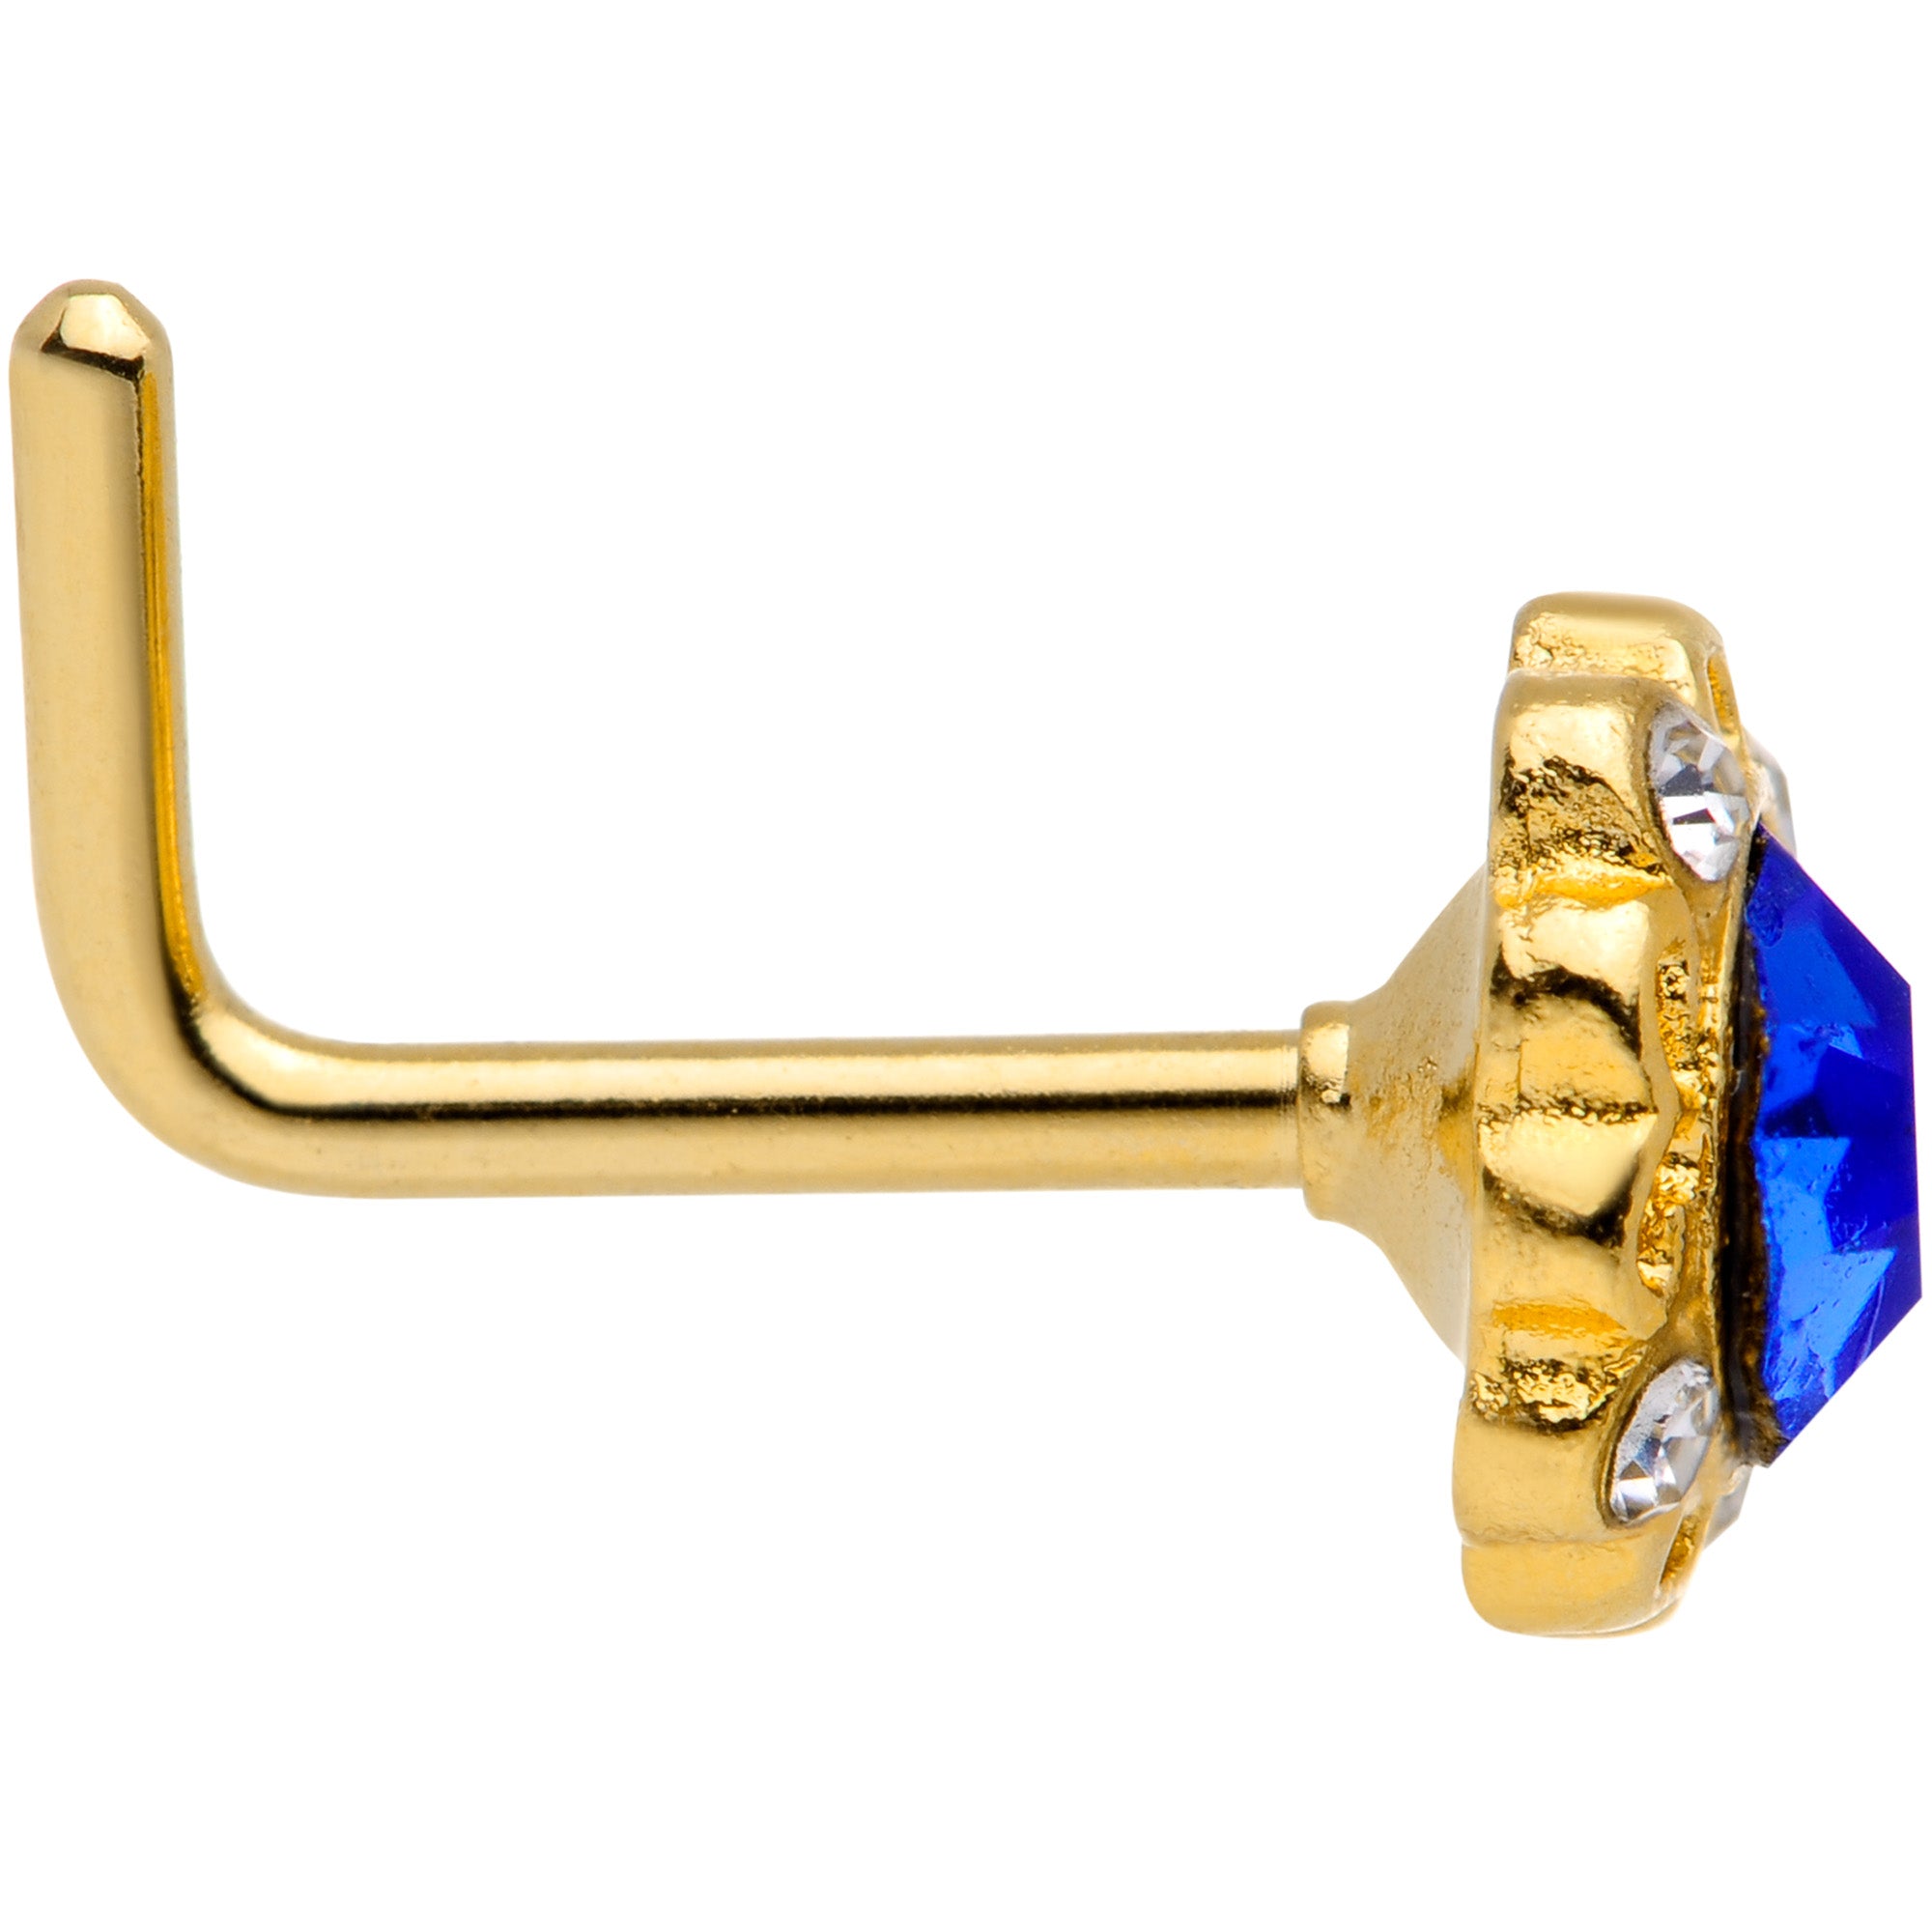 18 Gauge 5/16 Clear Blue Gem Gold Tone Regal L Shaped Nose Ring